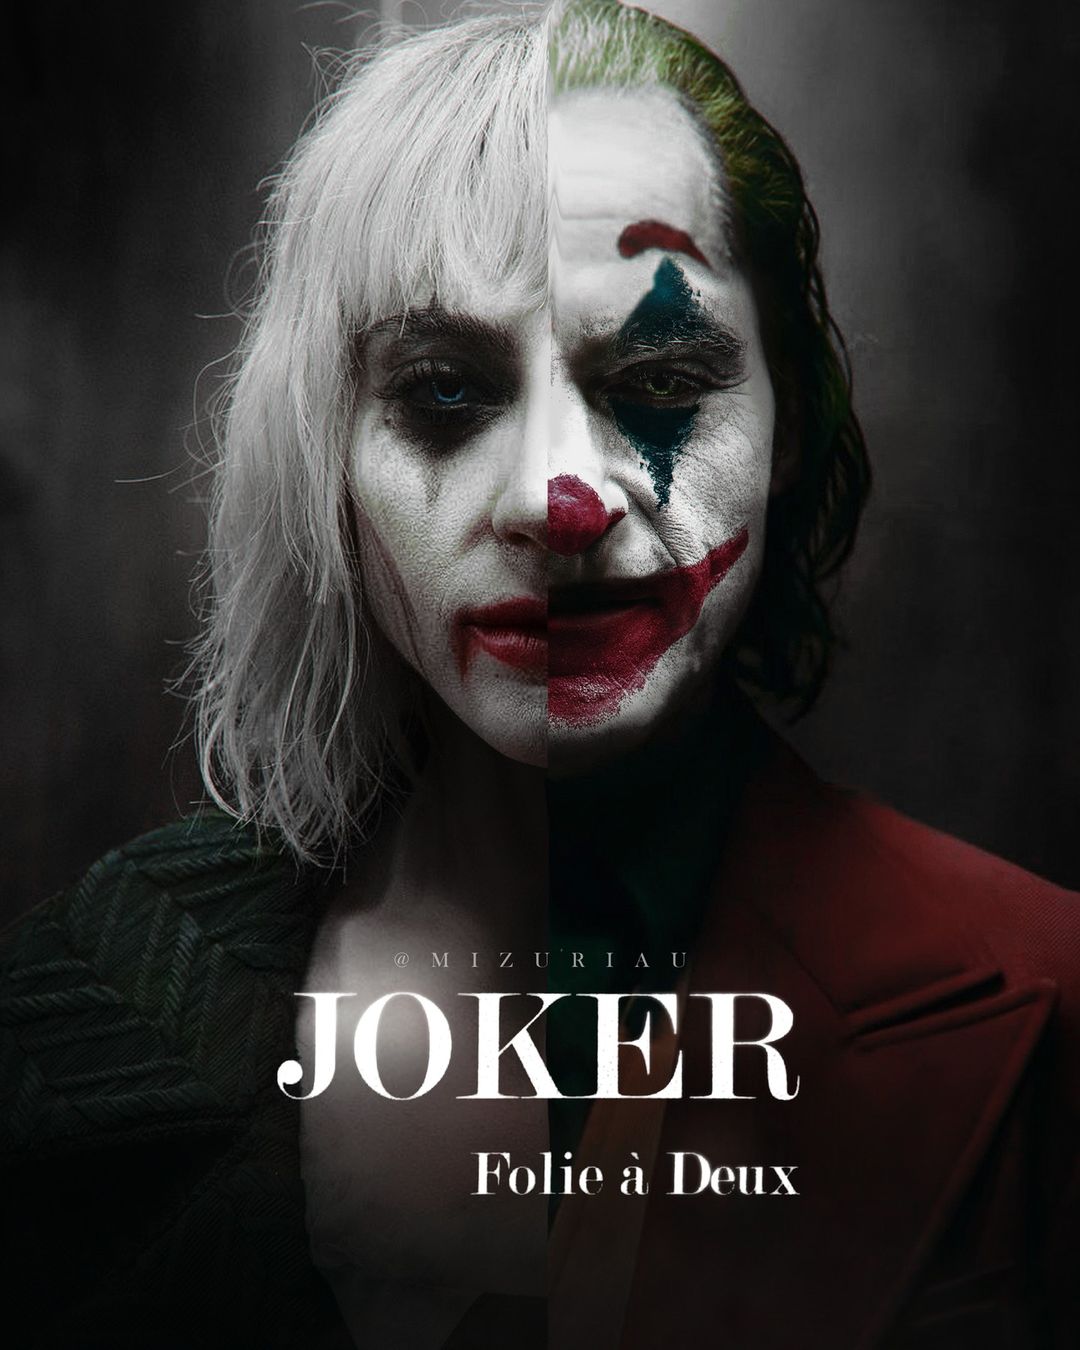 Артур Флек и Харли Квинн разделили постер фильма «Джокер 2» от художника